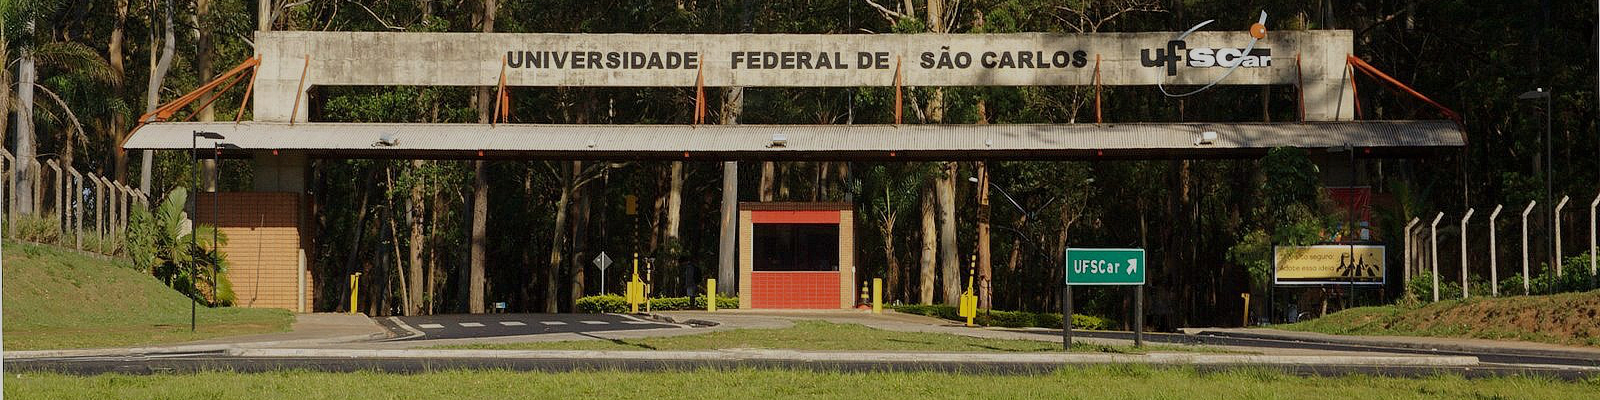 Portaria área sul - UFSCar São Carlos